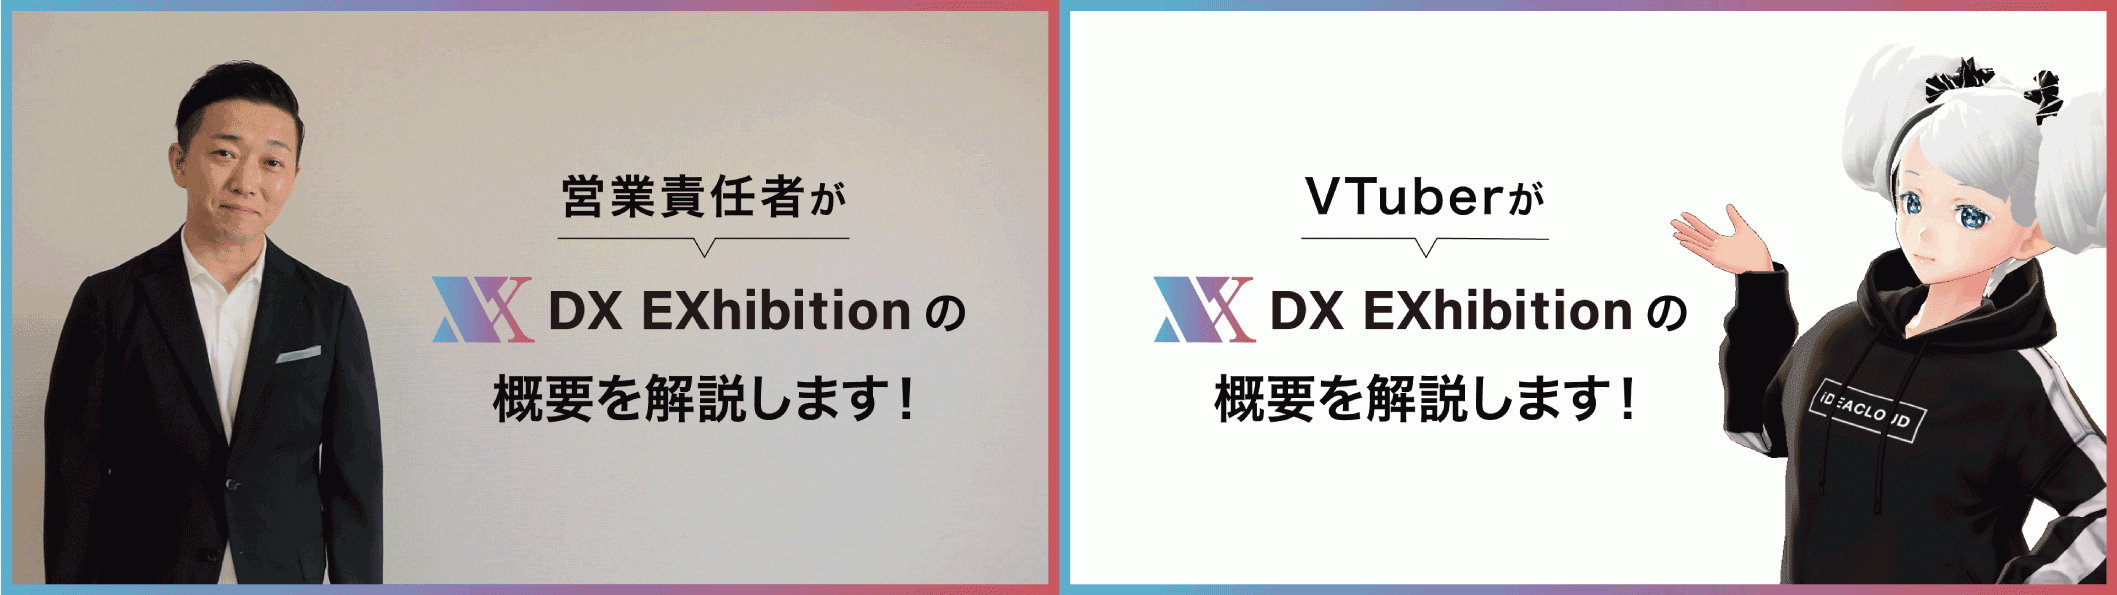 営業責任者が「DX EXhibition」の概要を説明_VTuberが「DX EXhibition」の概要を説明